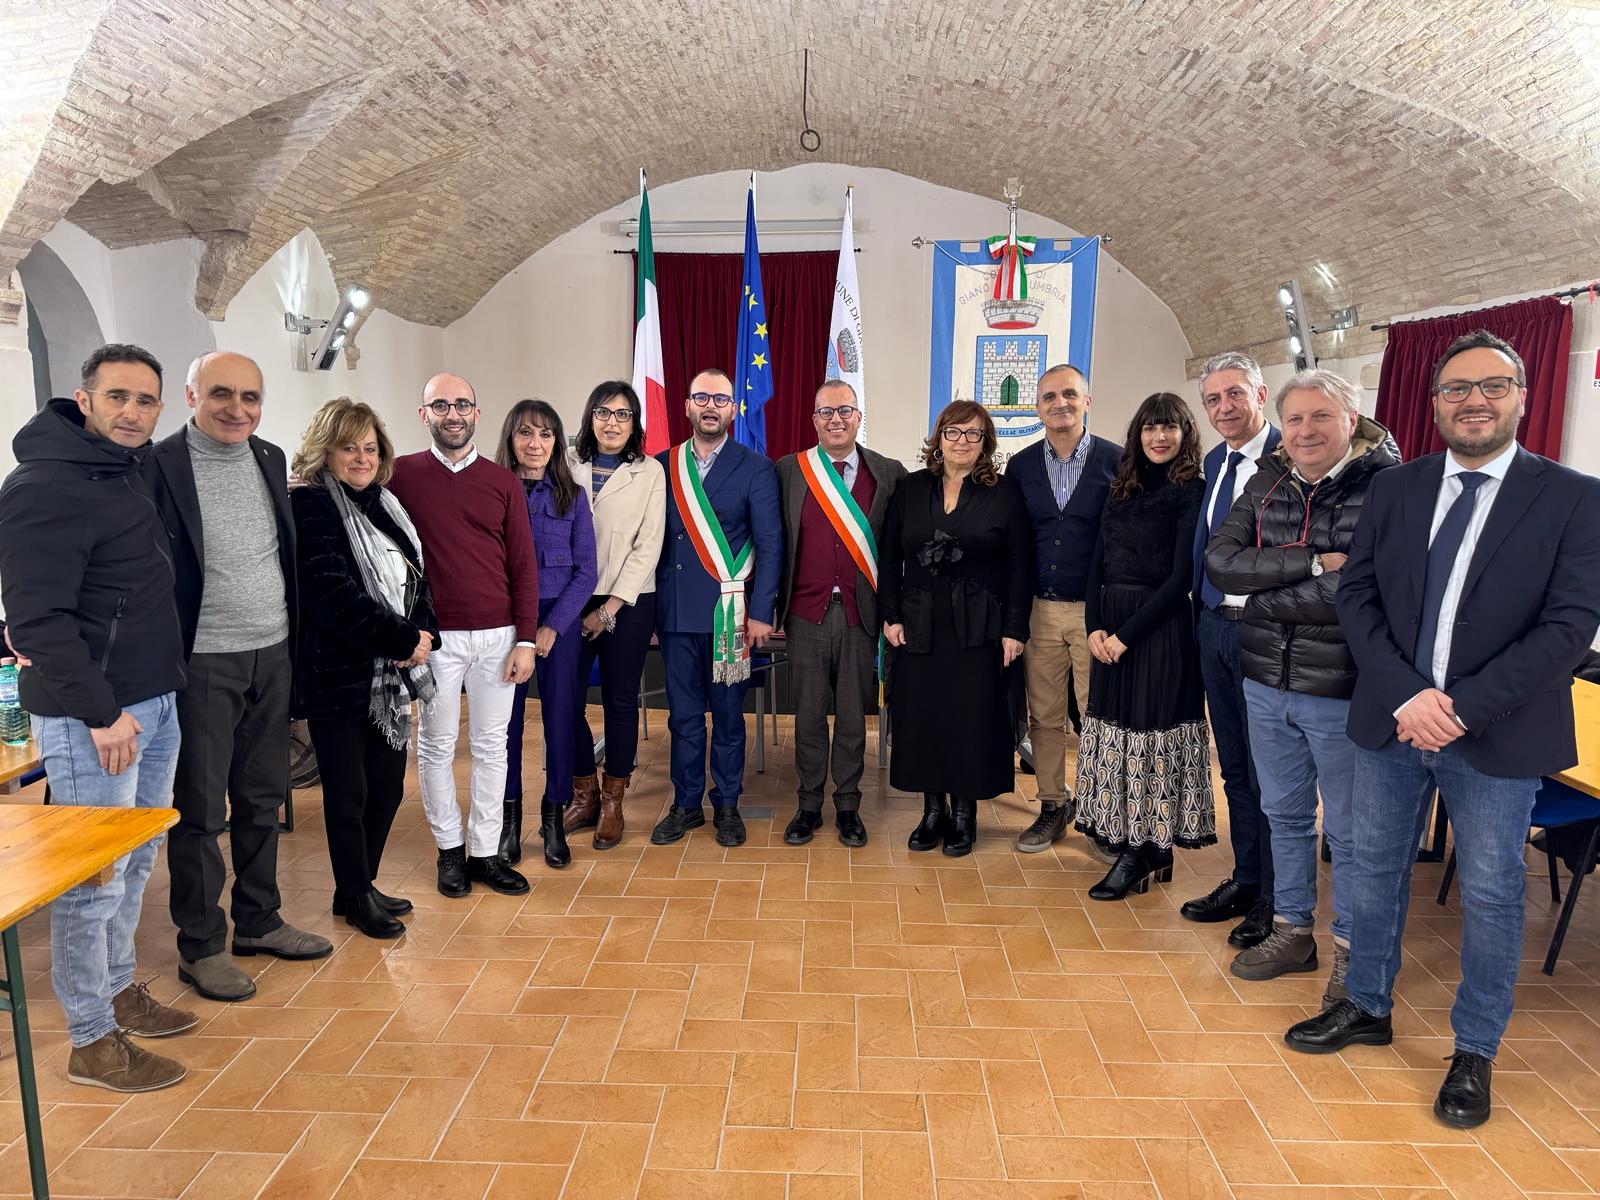 Giano dell’Umbria - Delegazione istituzionale di Atripalda in visita al Comune: a breve il gemellaggio